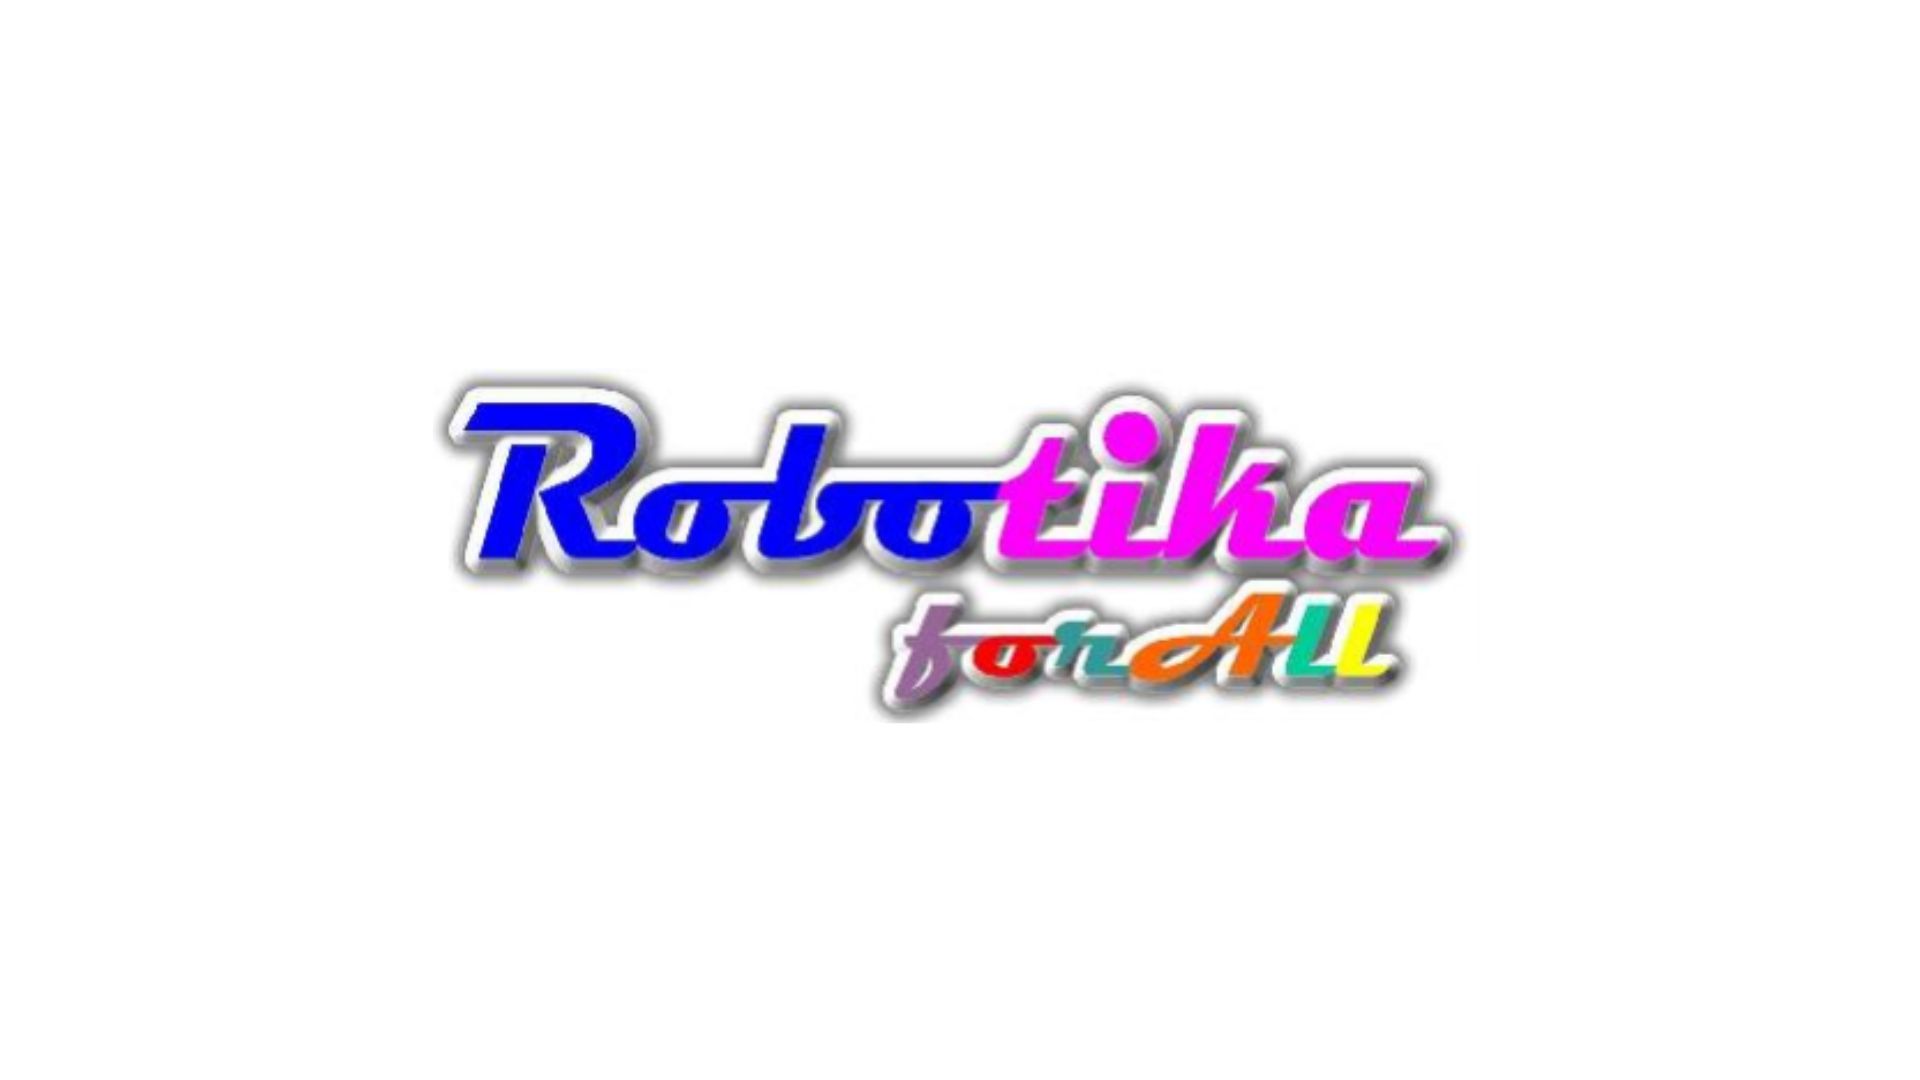 Nueva marca "ROBOTIKA FOR ALL" abarca la educación, el entretenimiento y la tecnología en Córdoba